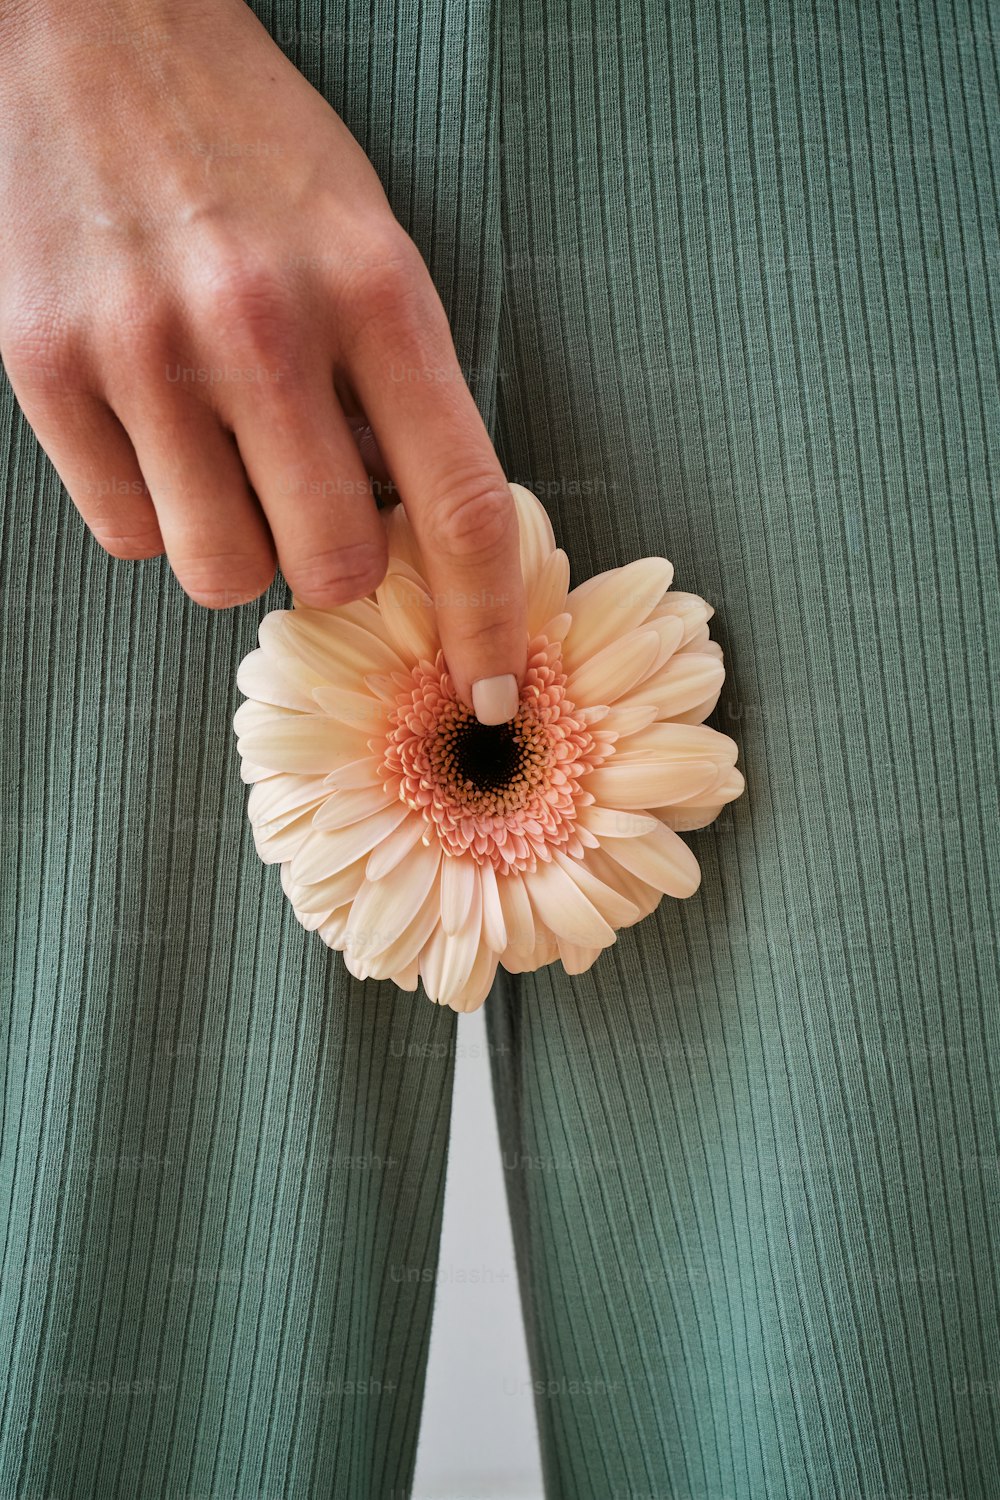 uma pessoa segurando uma flor na mão